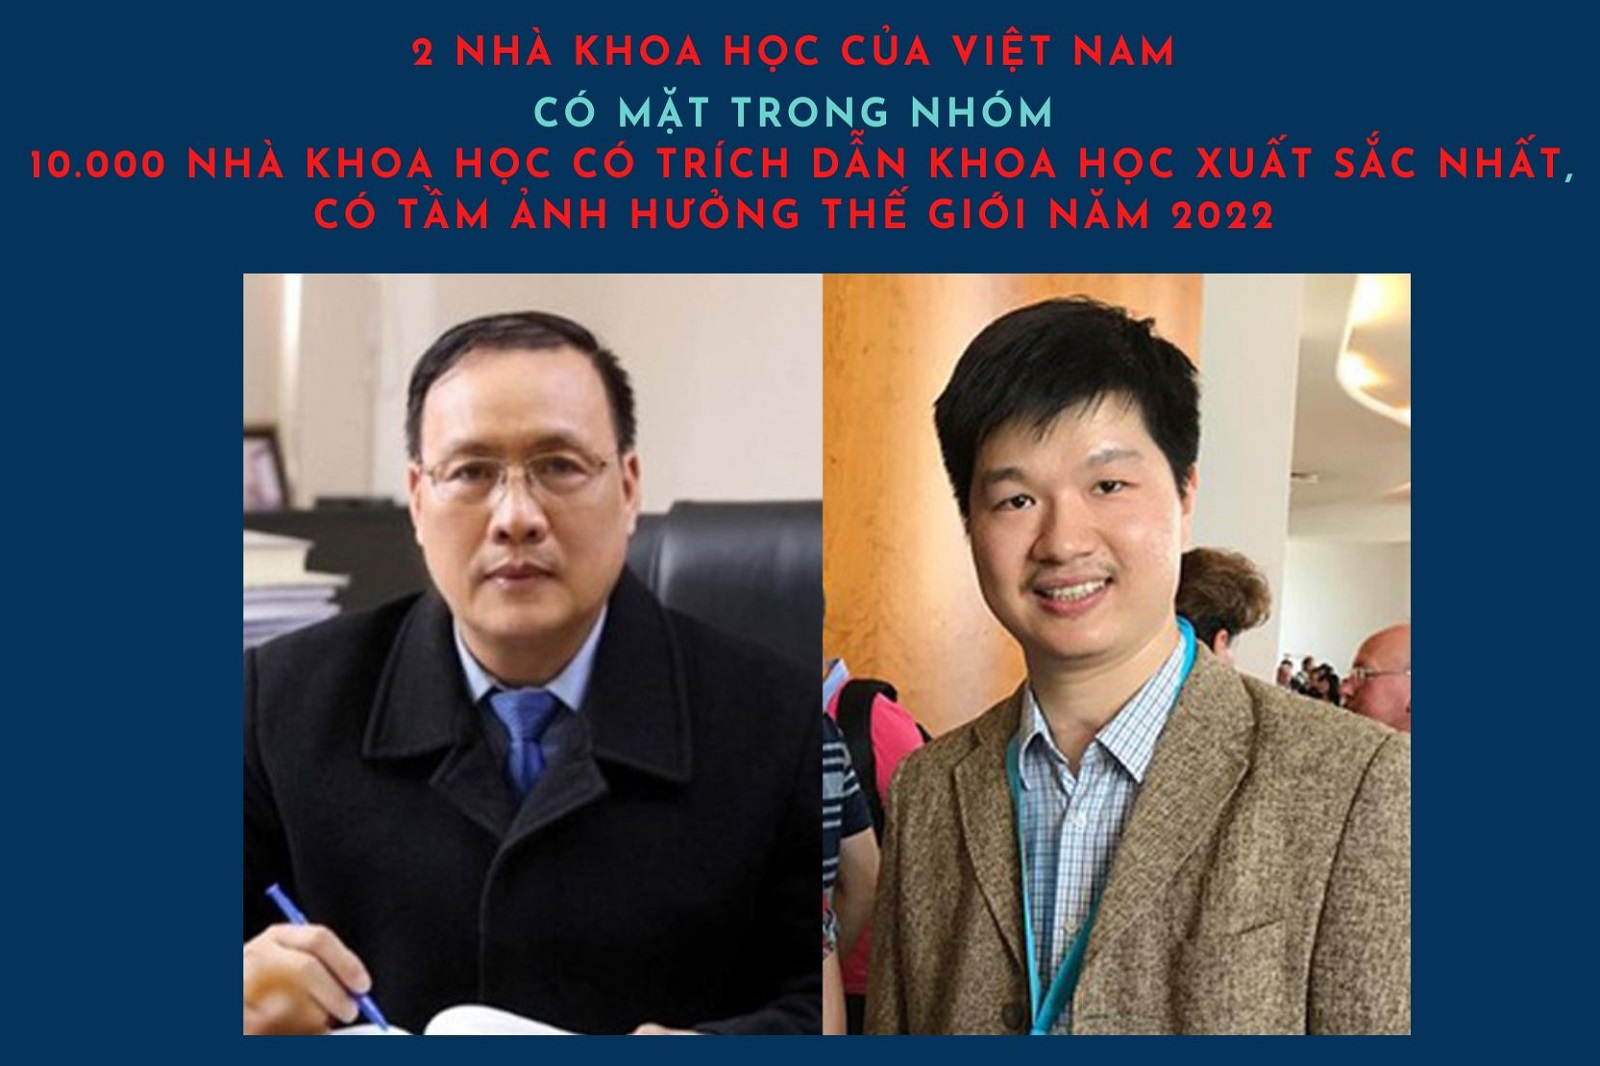 2 nhà khoa học của Việt Nam có mặt trong nhóm 10 nghìn nhà khoa học có trích dẫn khoa học xuất sắc nhất, có tầm ảnh hưởng thế giới năm 2022 